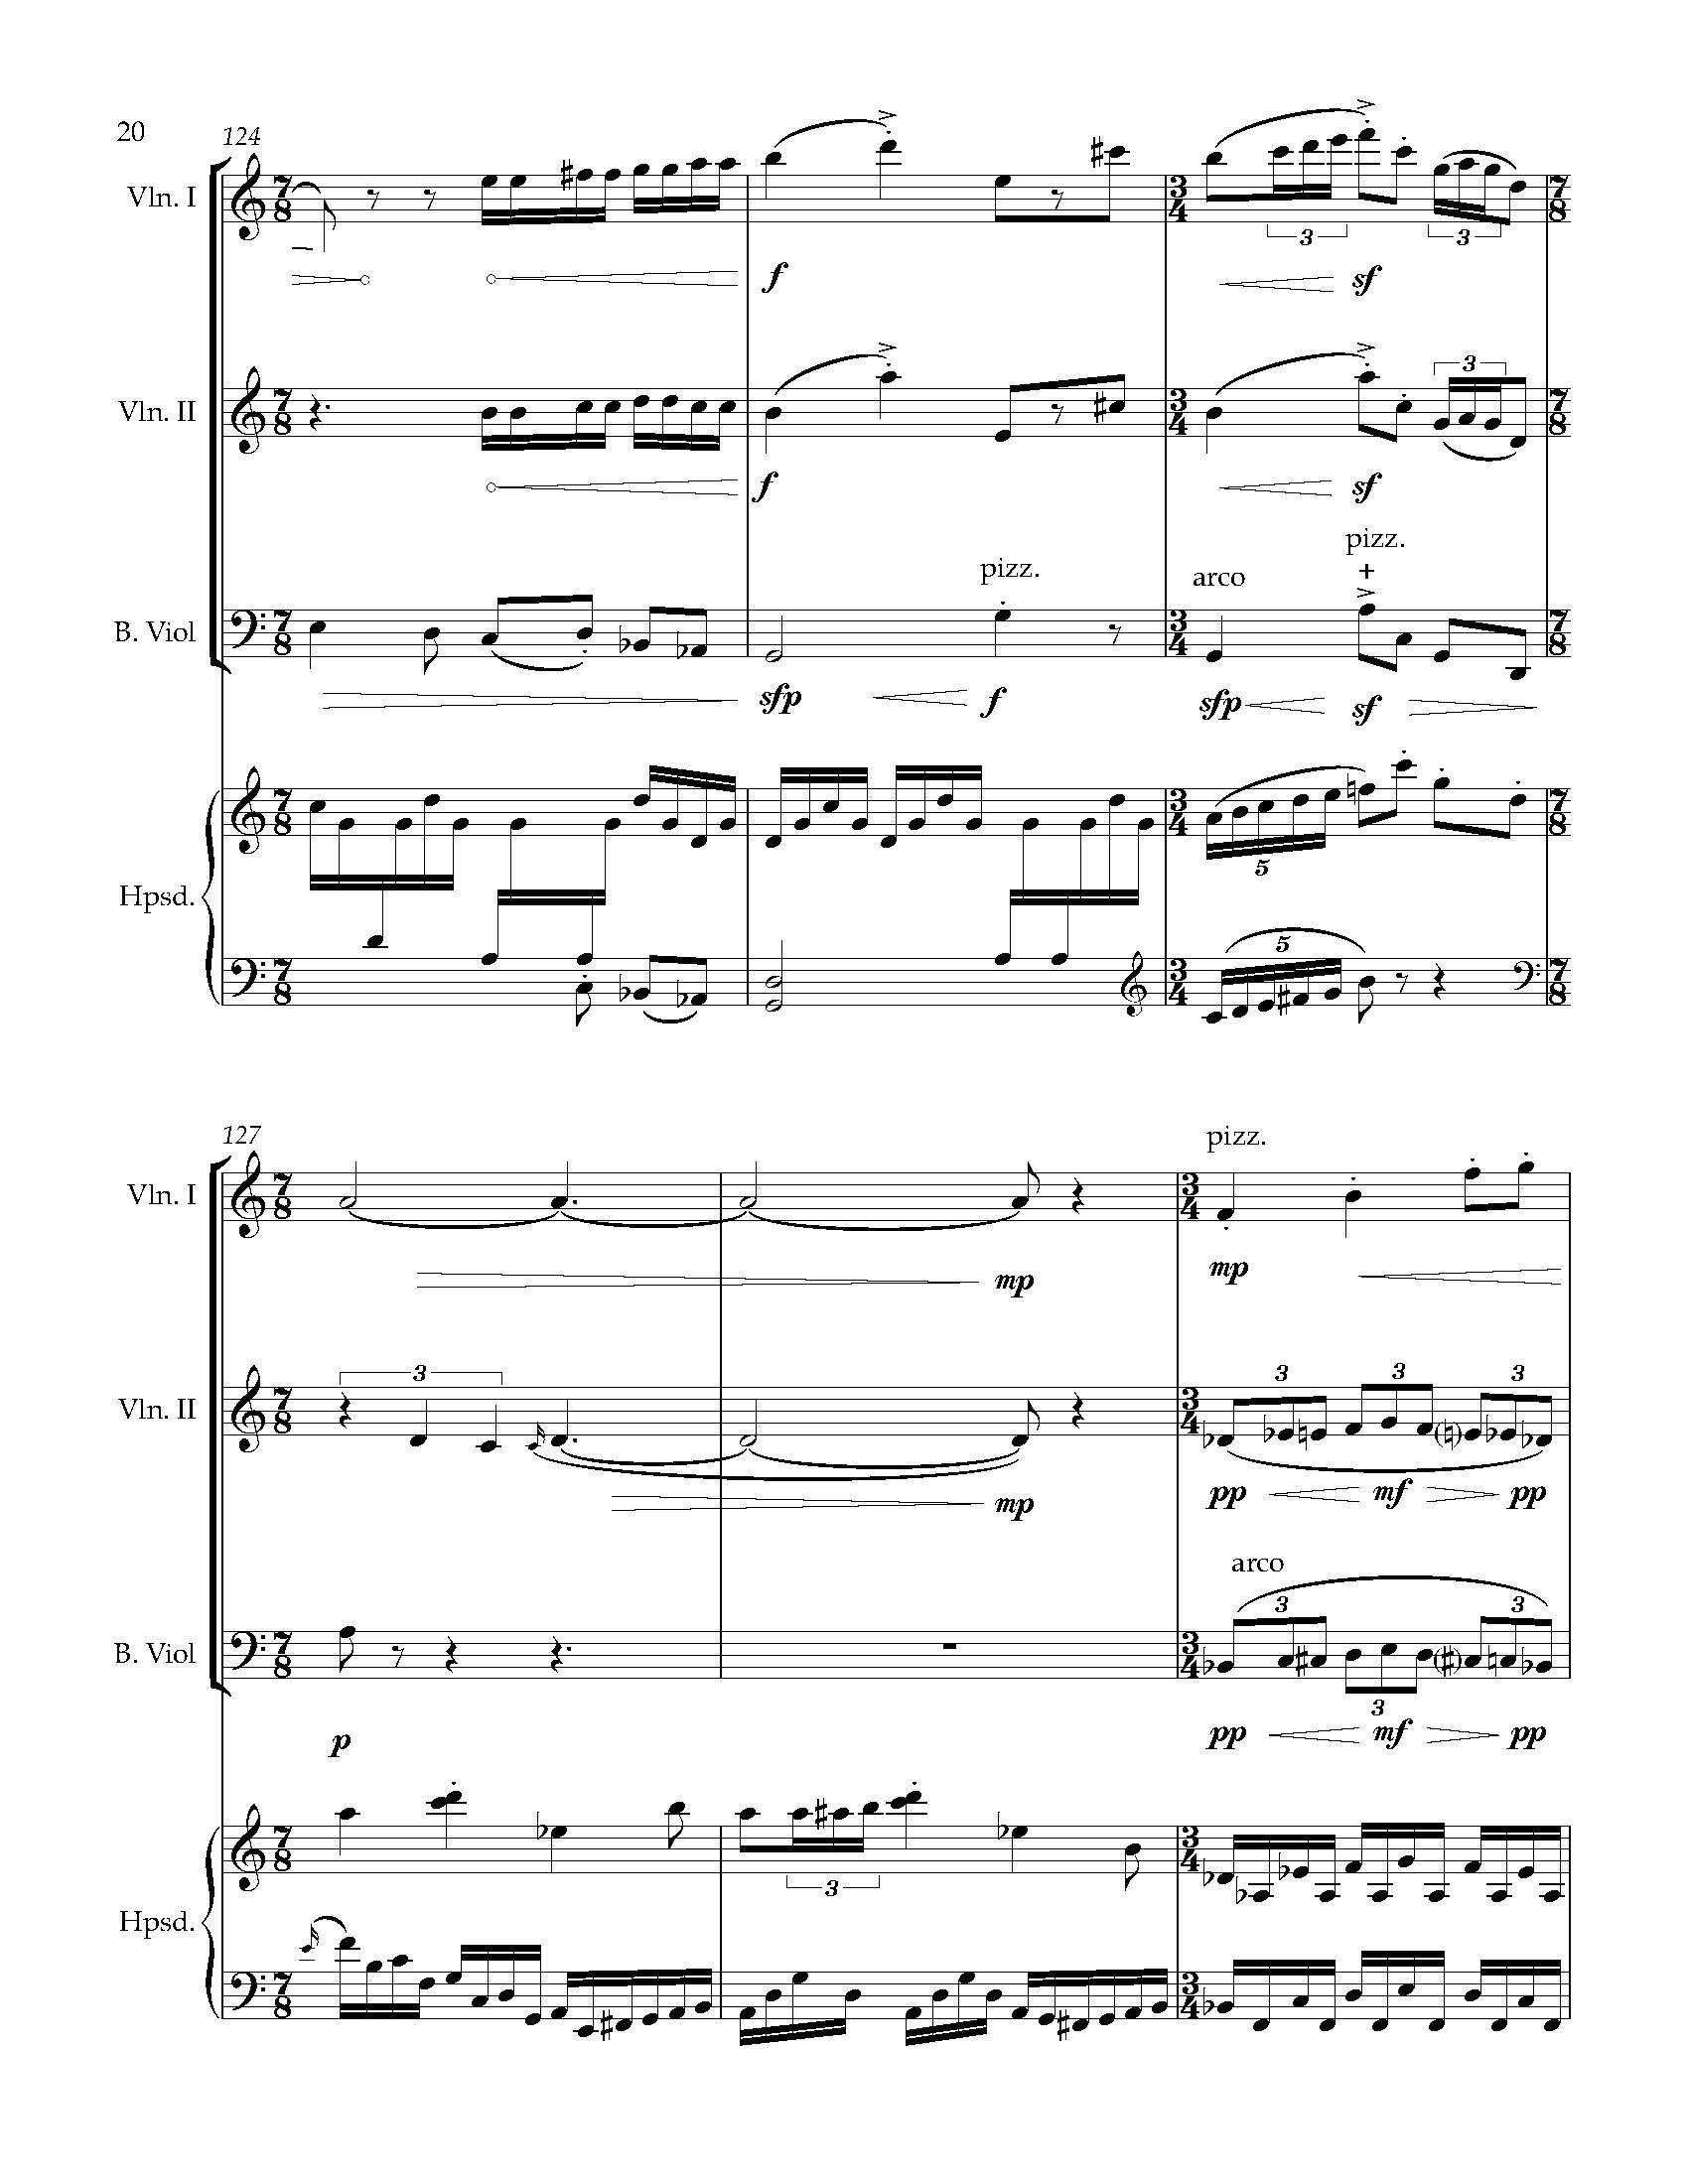 Sonata Sonare - Complete Score_Page_26.jpg